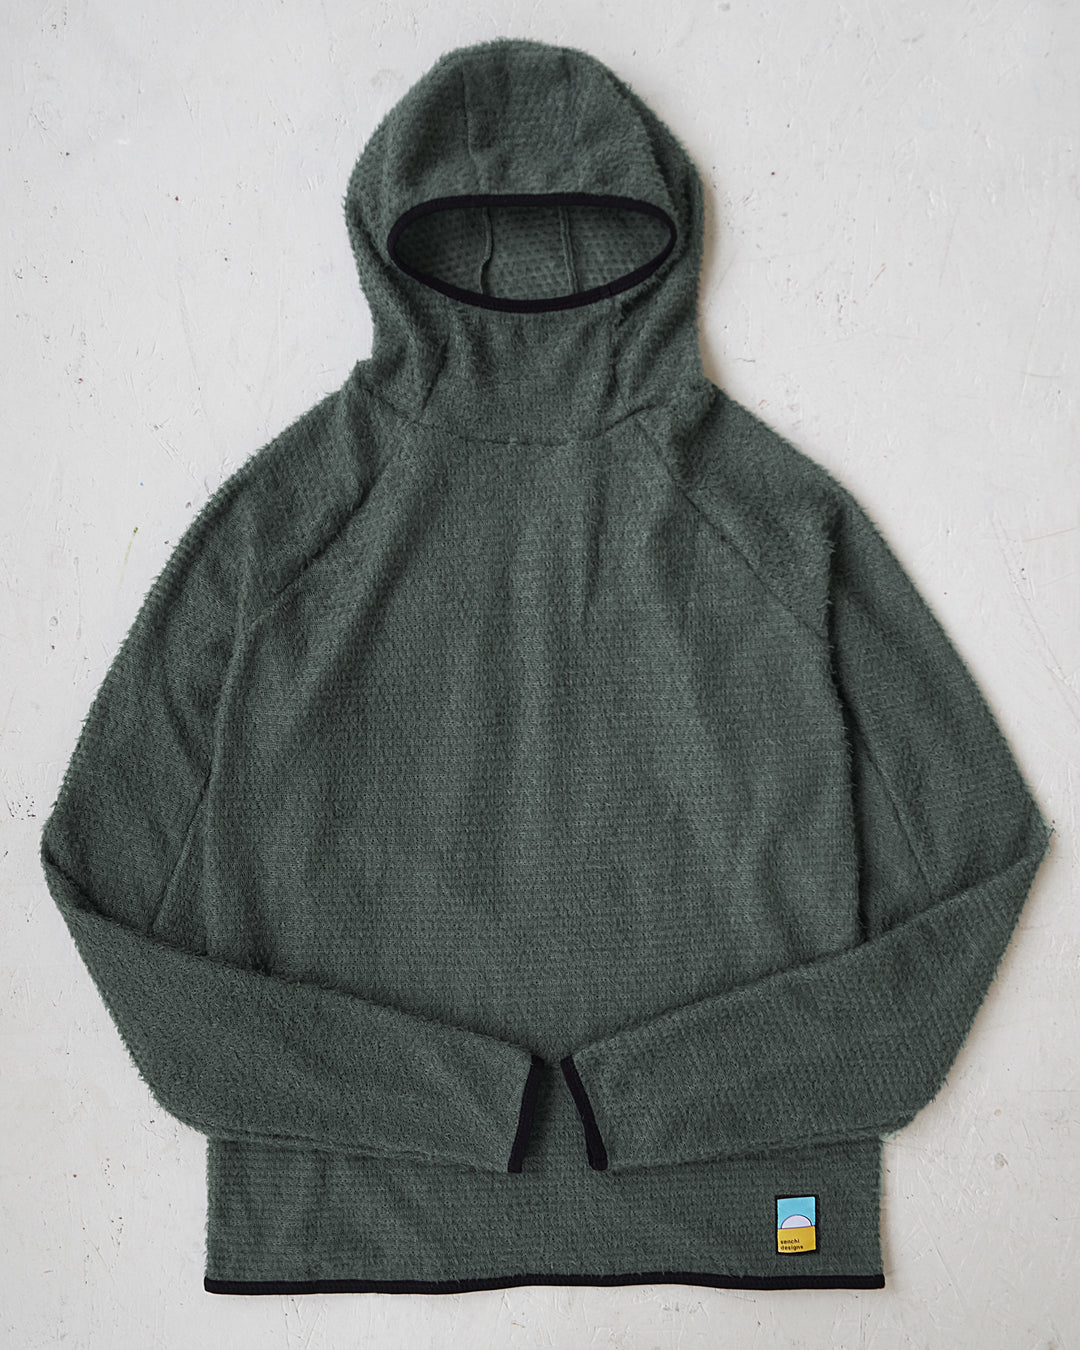 Quechua Decathlon Womens Fleece Sweater Jacket Full Zip Size M Brown Zip  Pocket